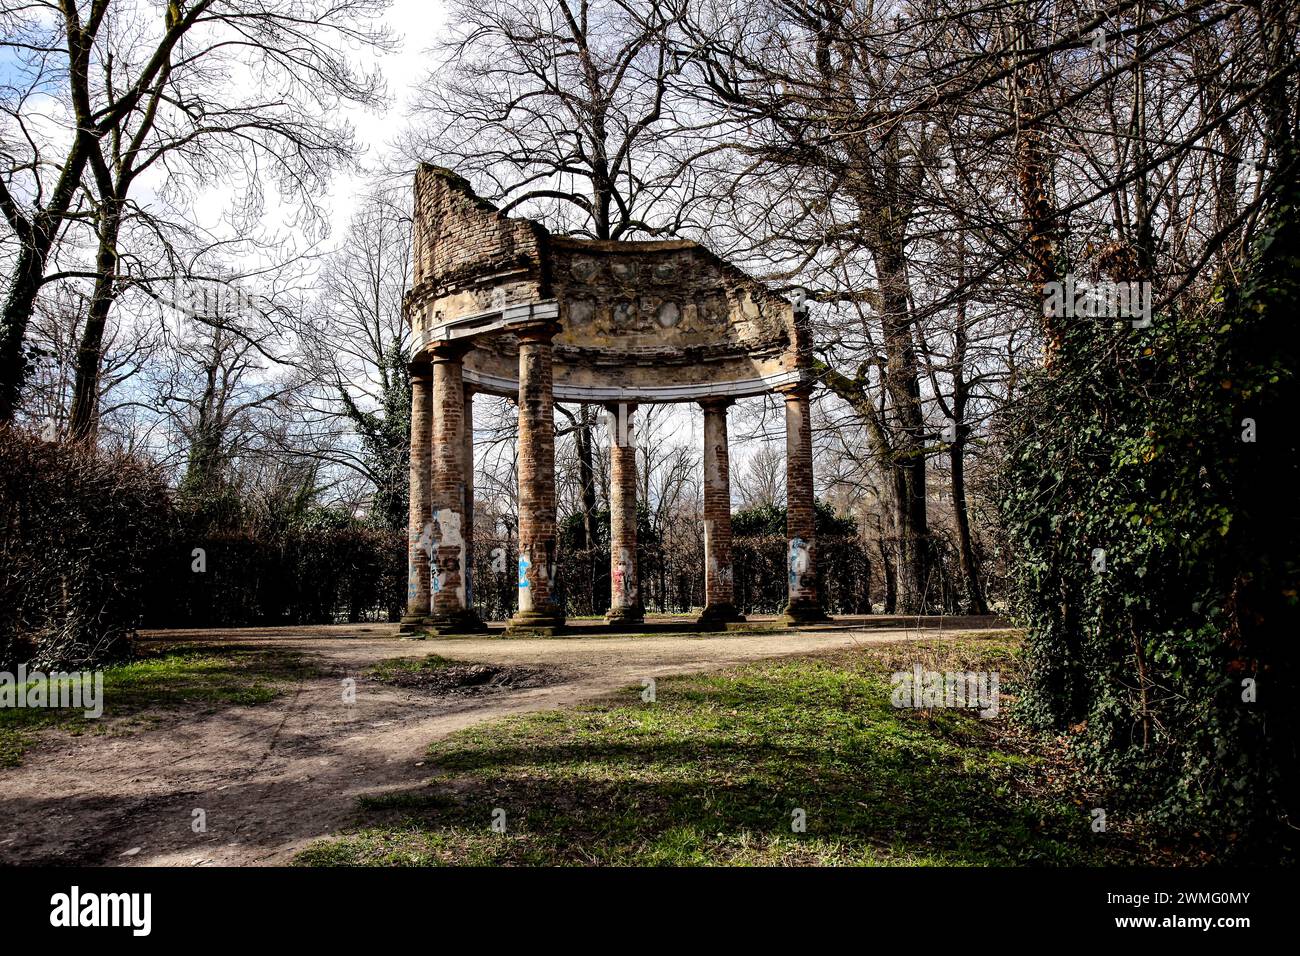 Im Ducale Park von Parma: Ein ikonischer Tempel inmitten üppigen Grüns, geschmückt mit Statuen und Säulen, der zeitlose Schönheit und Gelassenheit ausstrahlt. Stockfoto